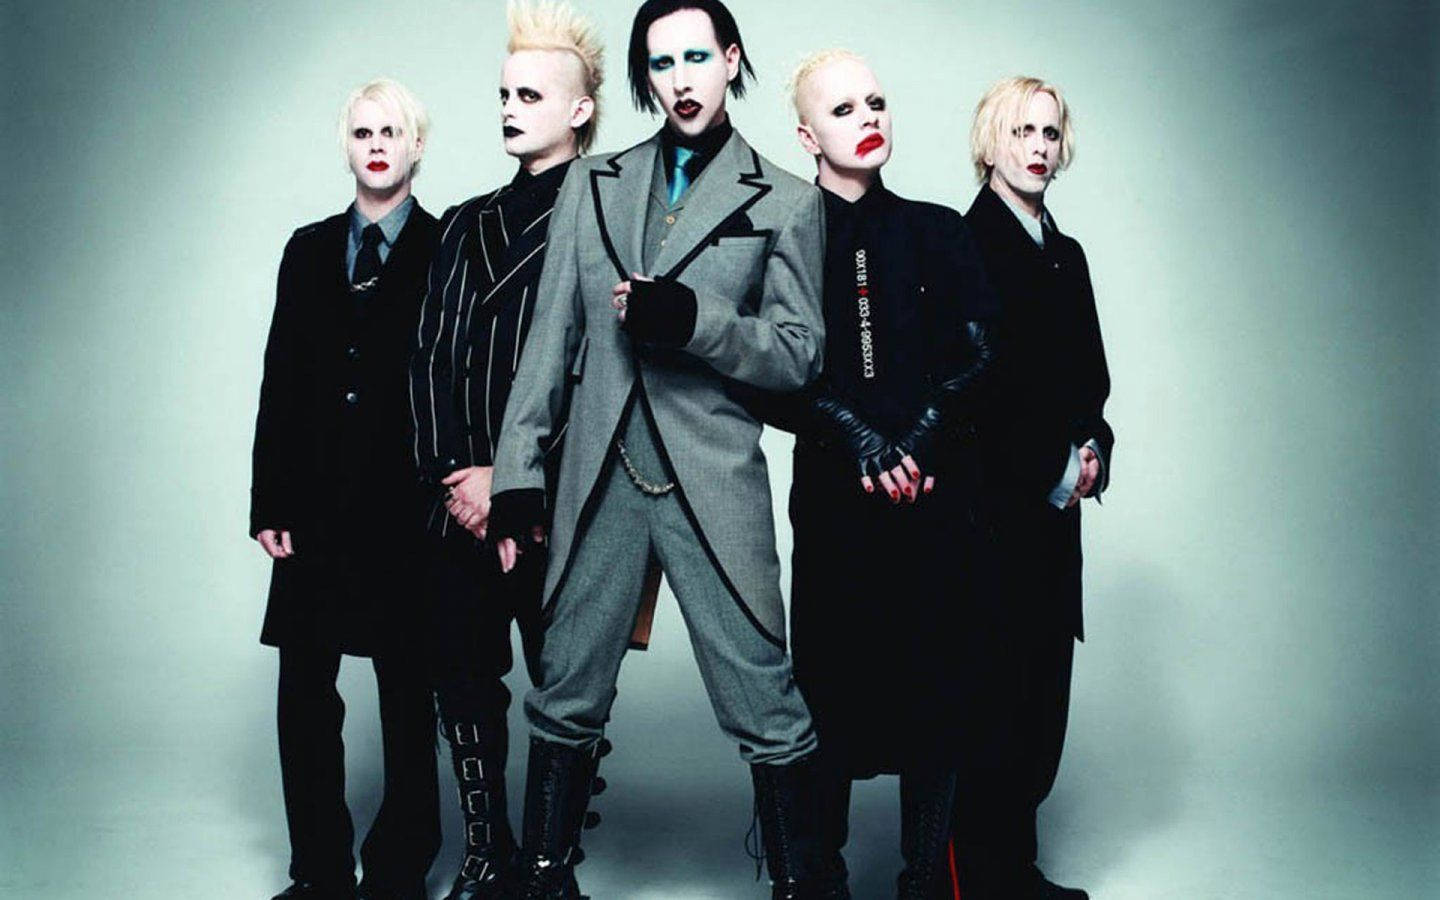 Singer-songwriter Marilyn Manson går imod den populære kultur. Wallpaper